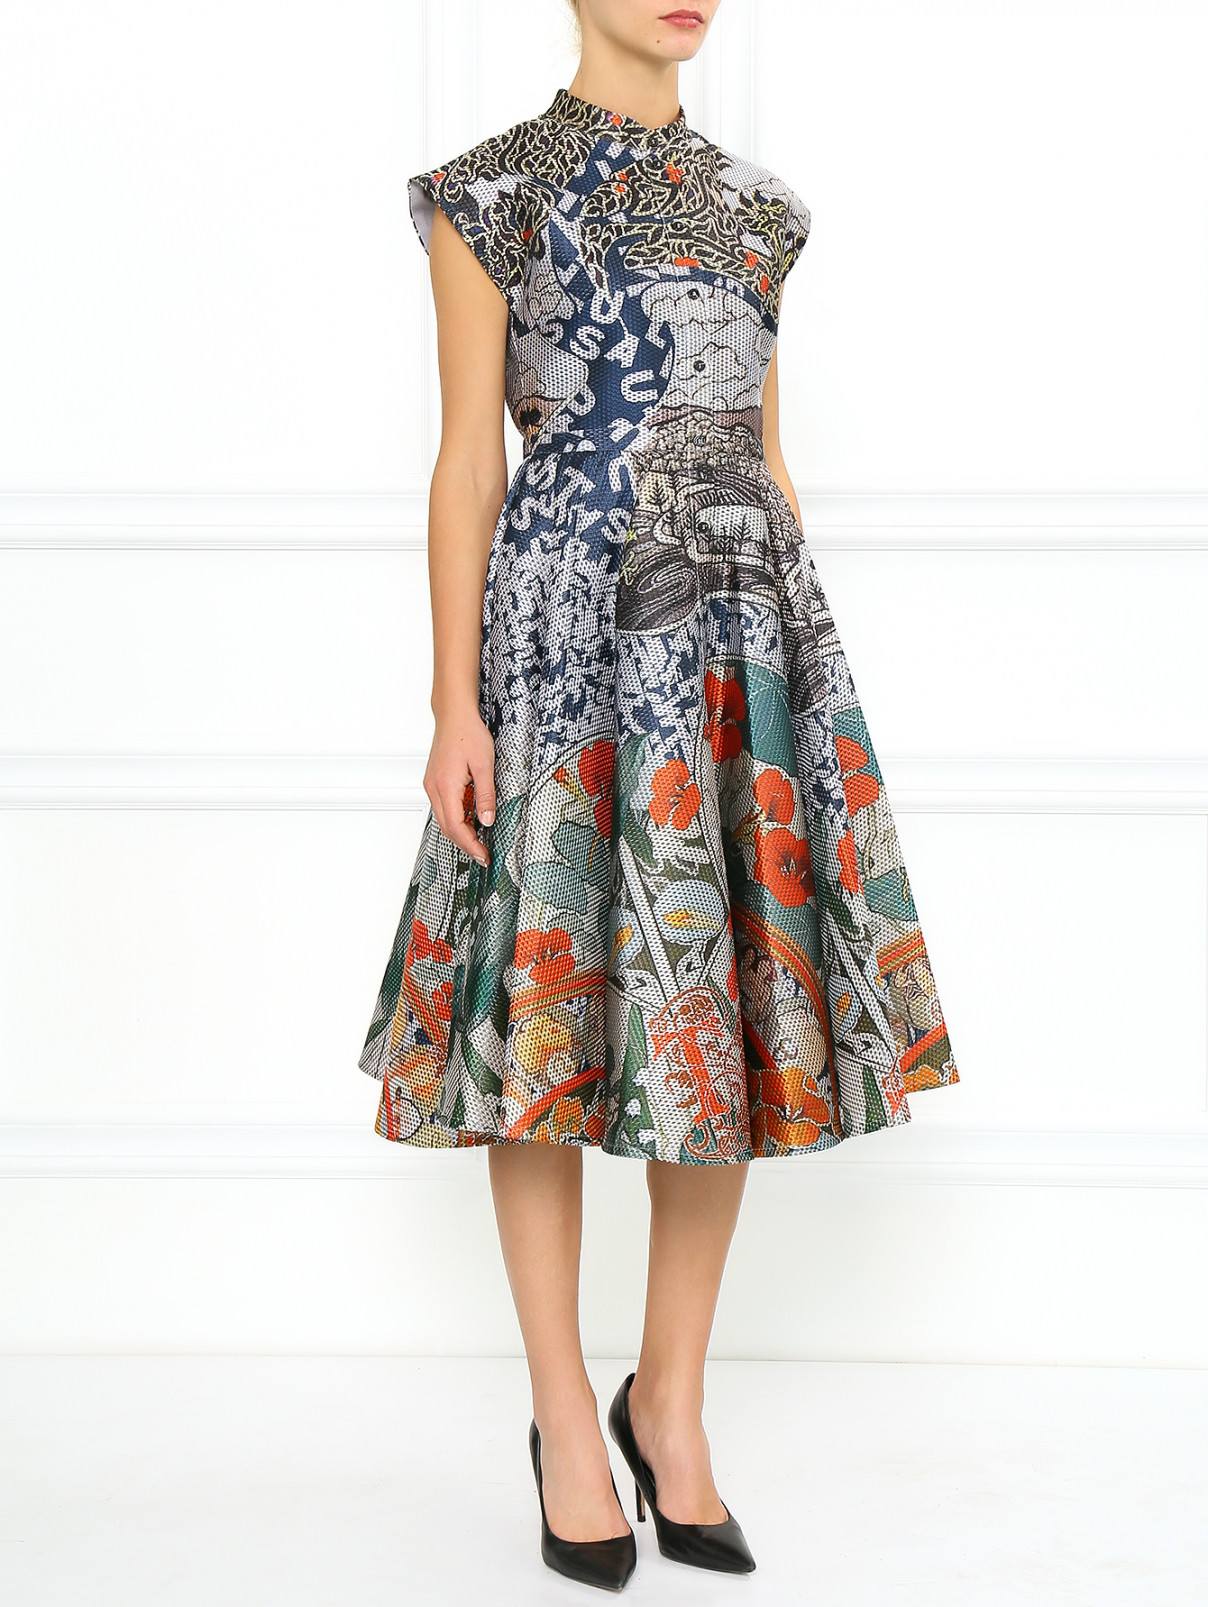 Платье-макси с абстрактным принтом Mary Katrantzou  –  Модель Общий вид  – Цвет:  Узор